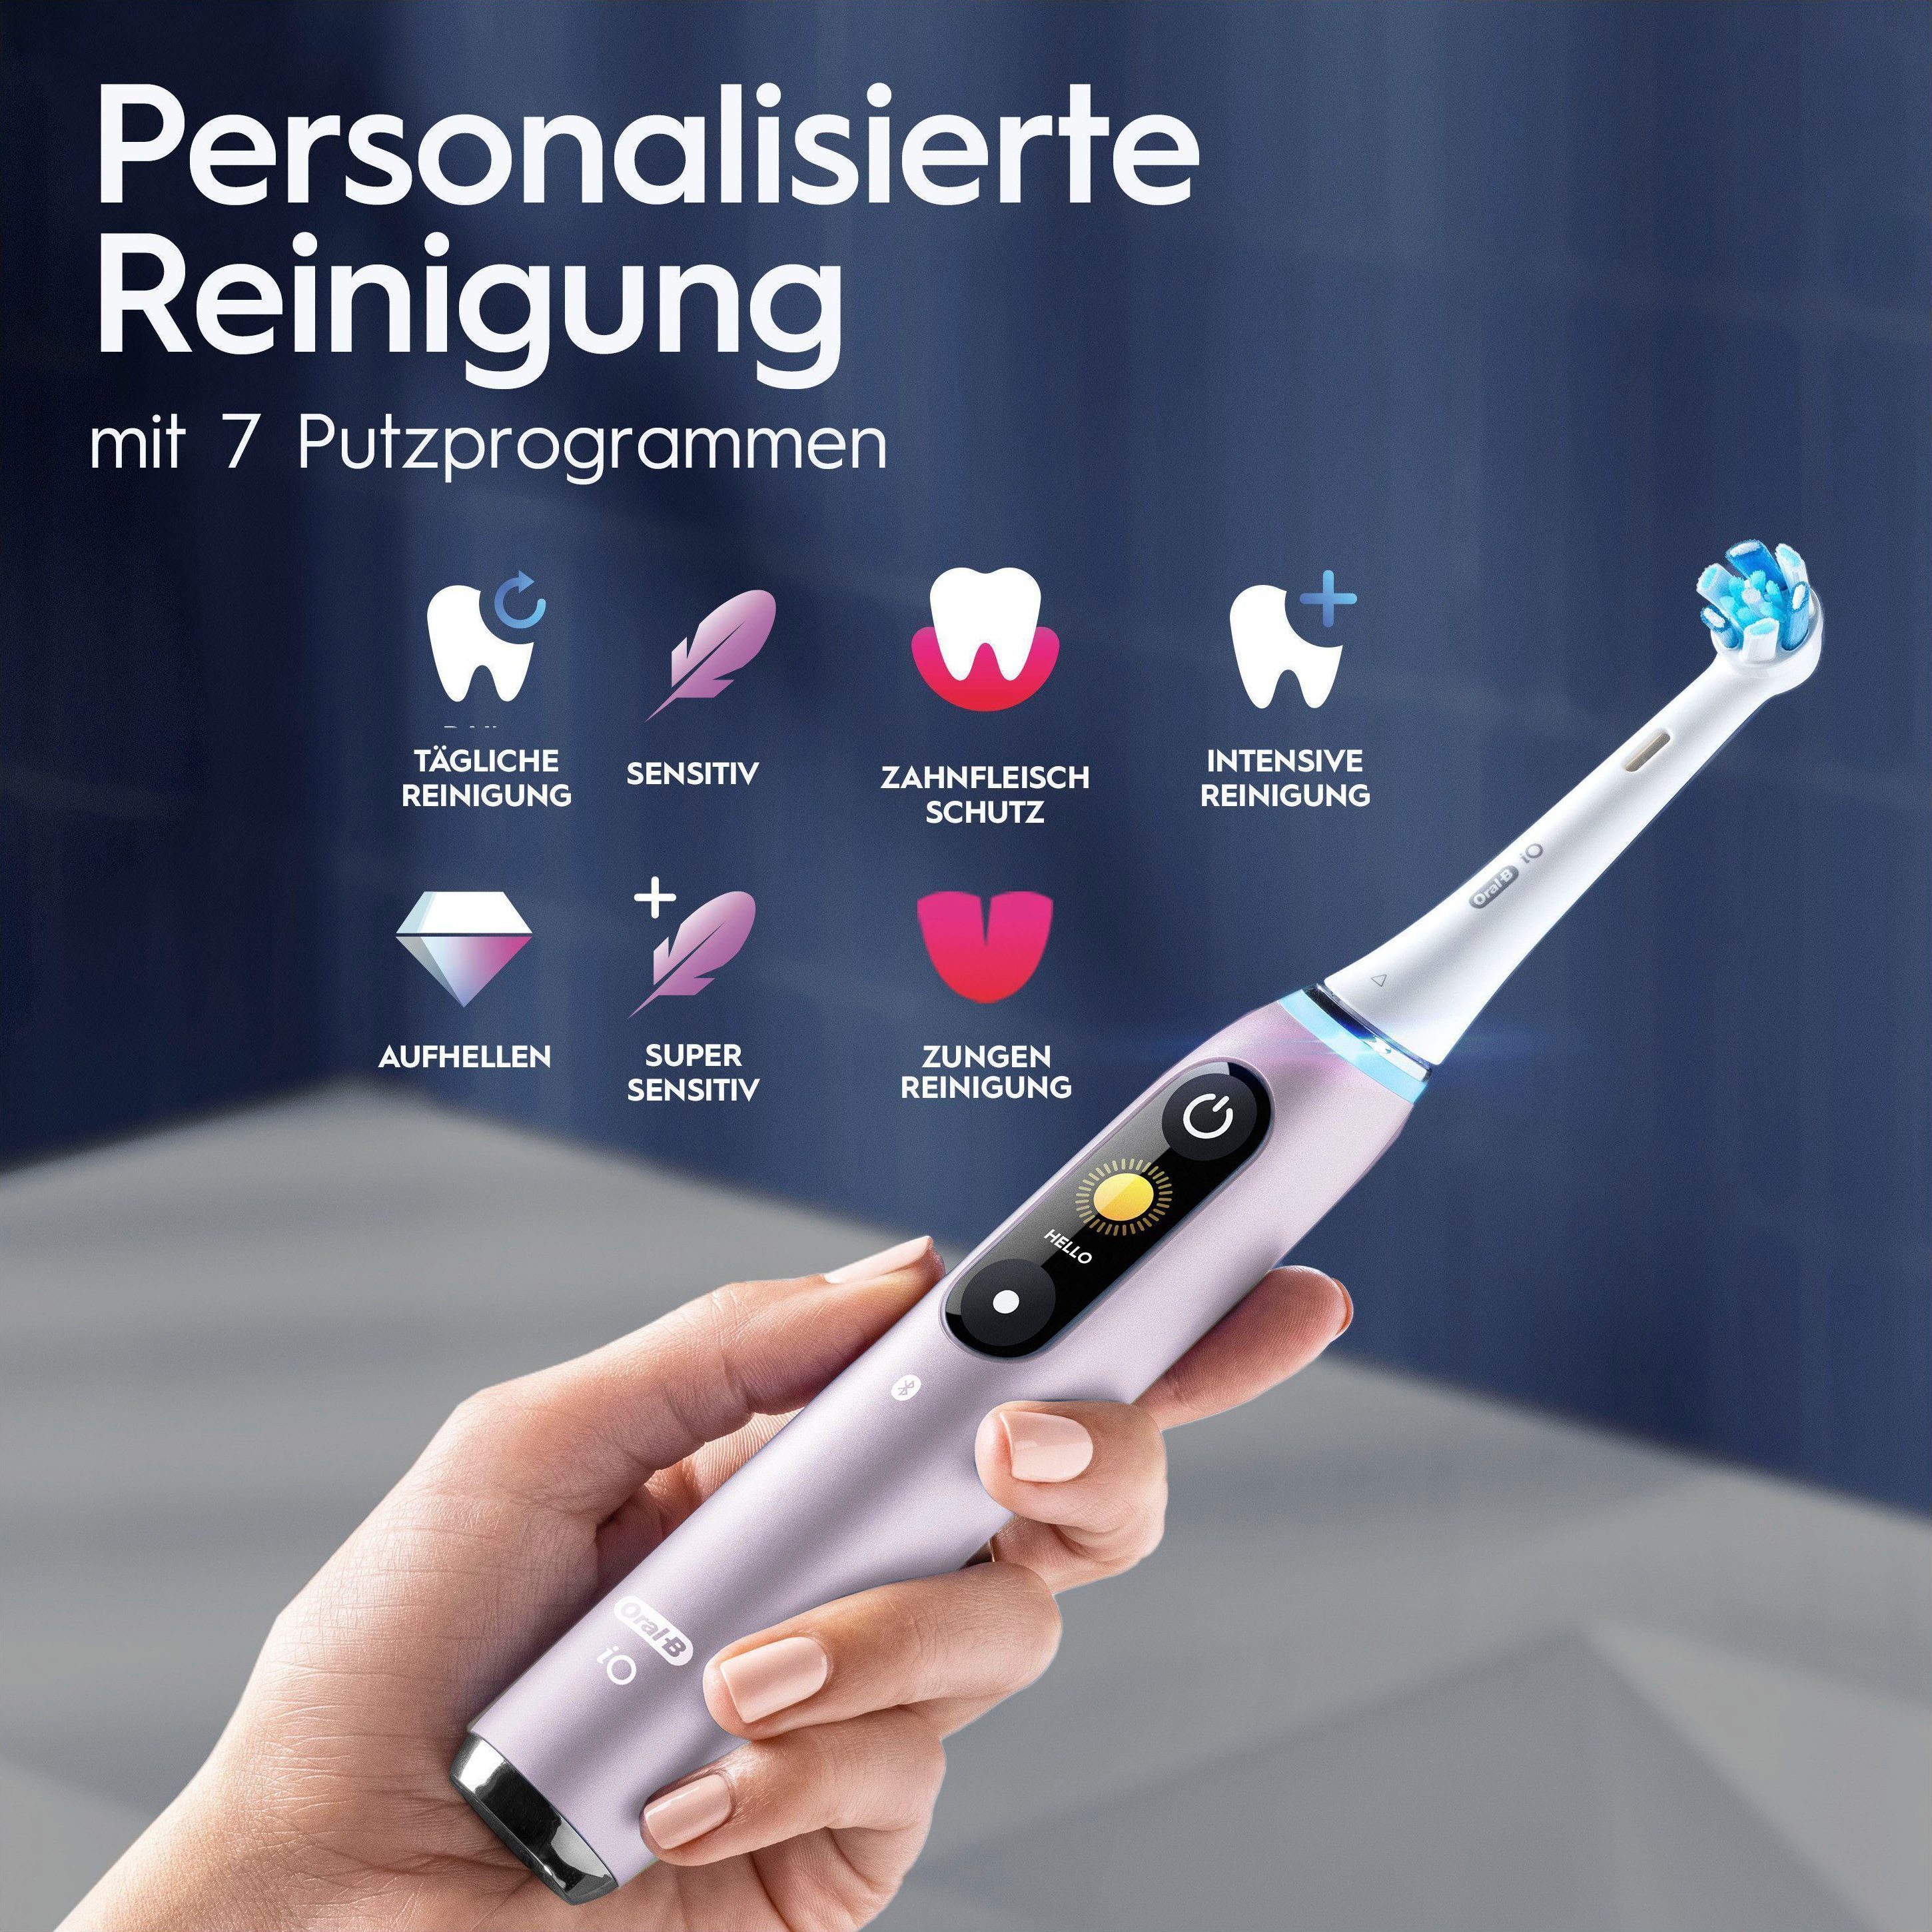 Oral-B Elektrische Zahnbürste iO 9, mit 2 Aufsteckbürsten: Quartz 7 Rose Putzmodi, Lade-Reiseetui Magnet-Technologie, & Farbdisplay St